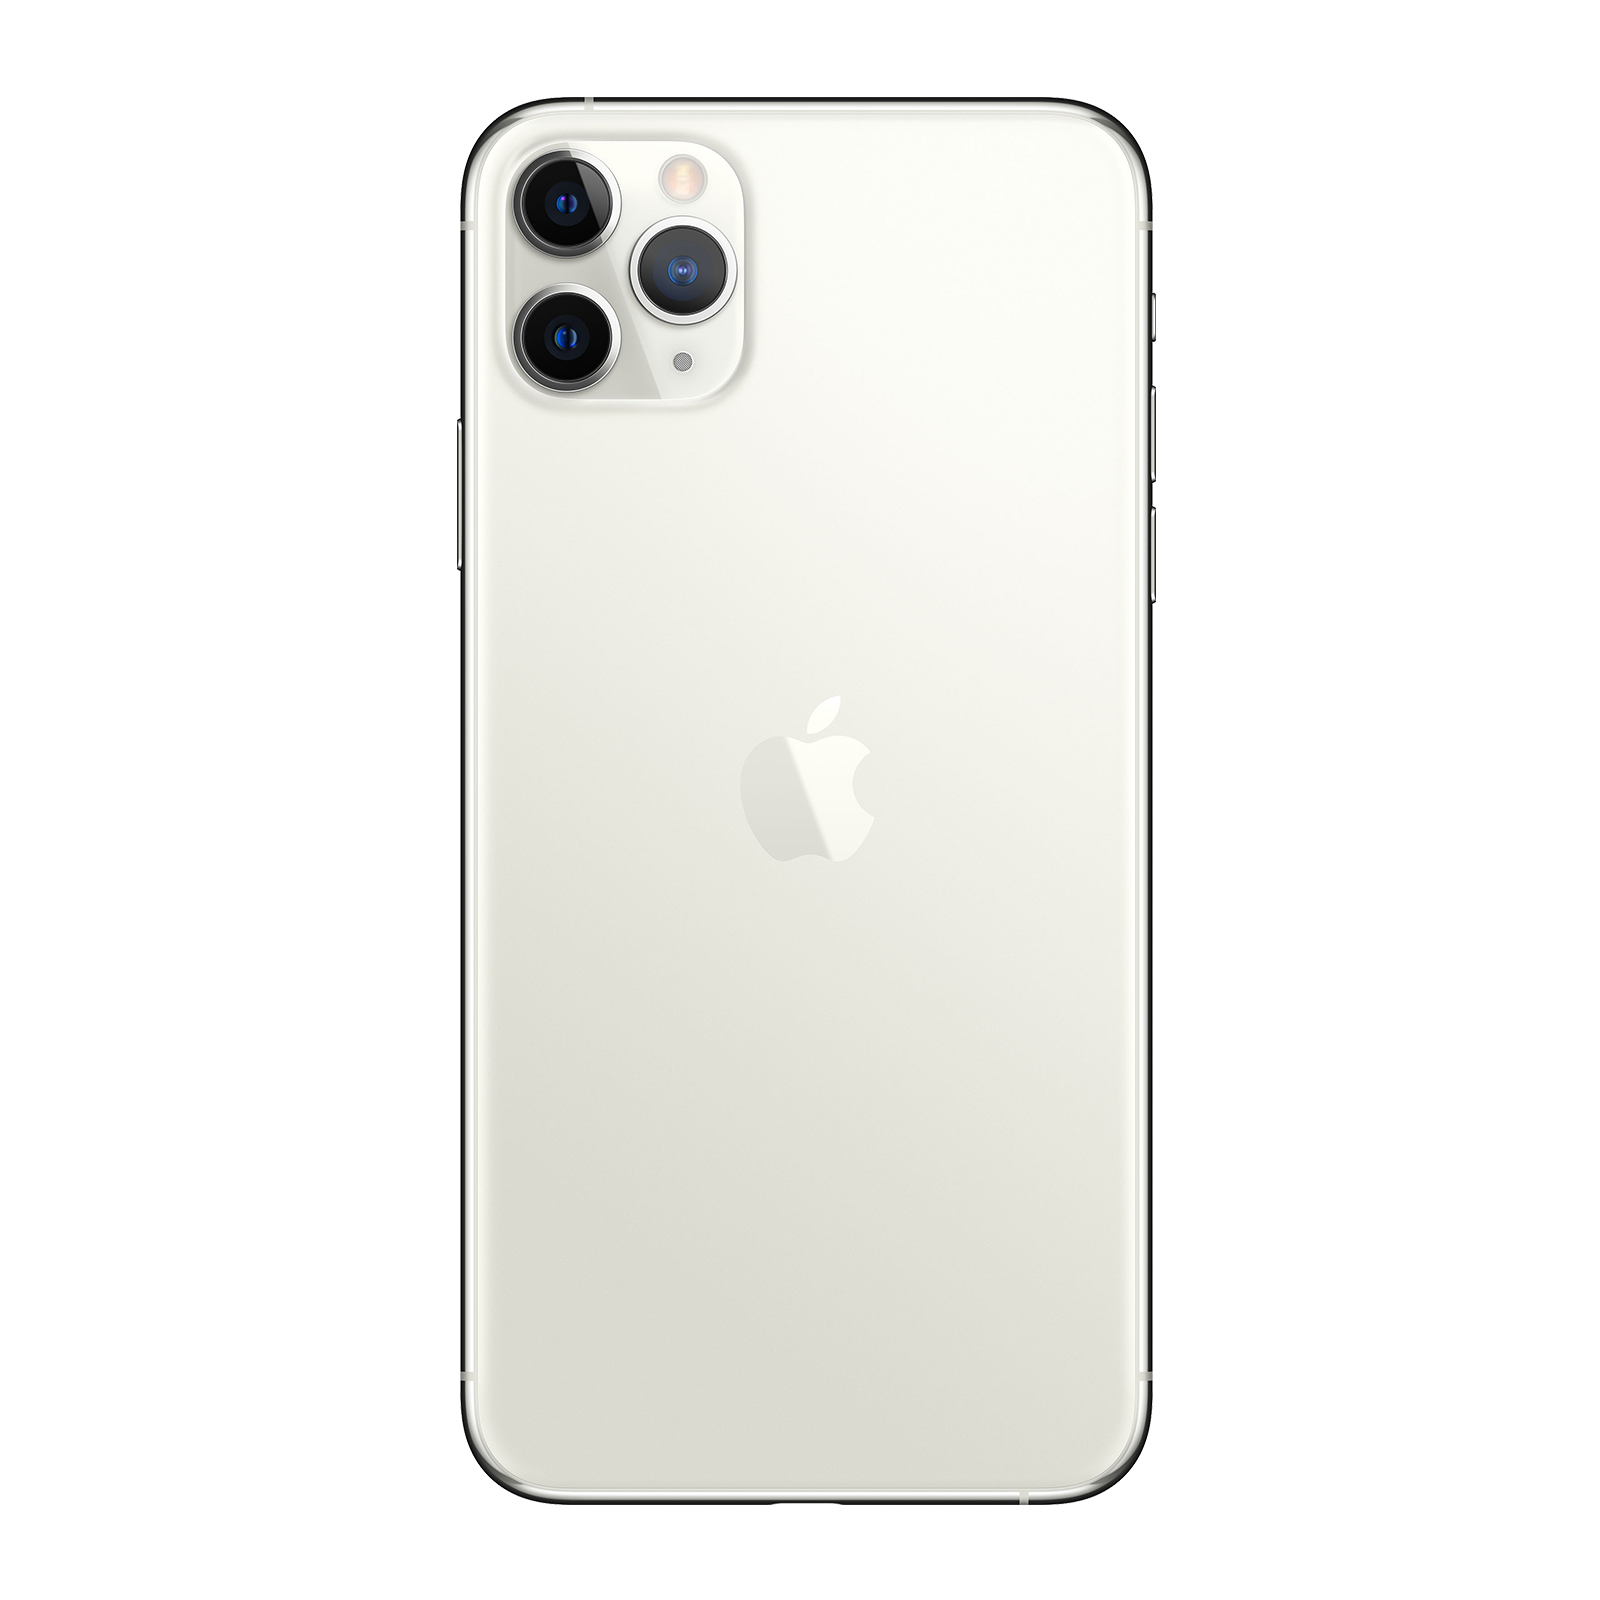 Apple iPhone 11 Pro 64GB Argento Come Nuovo Sbloccato